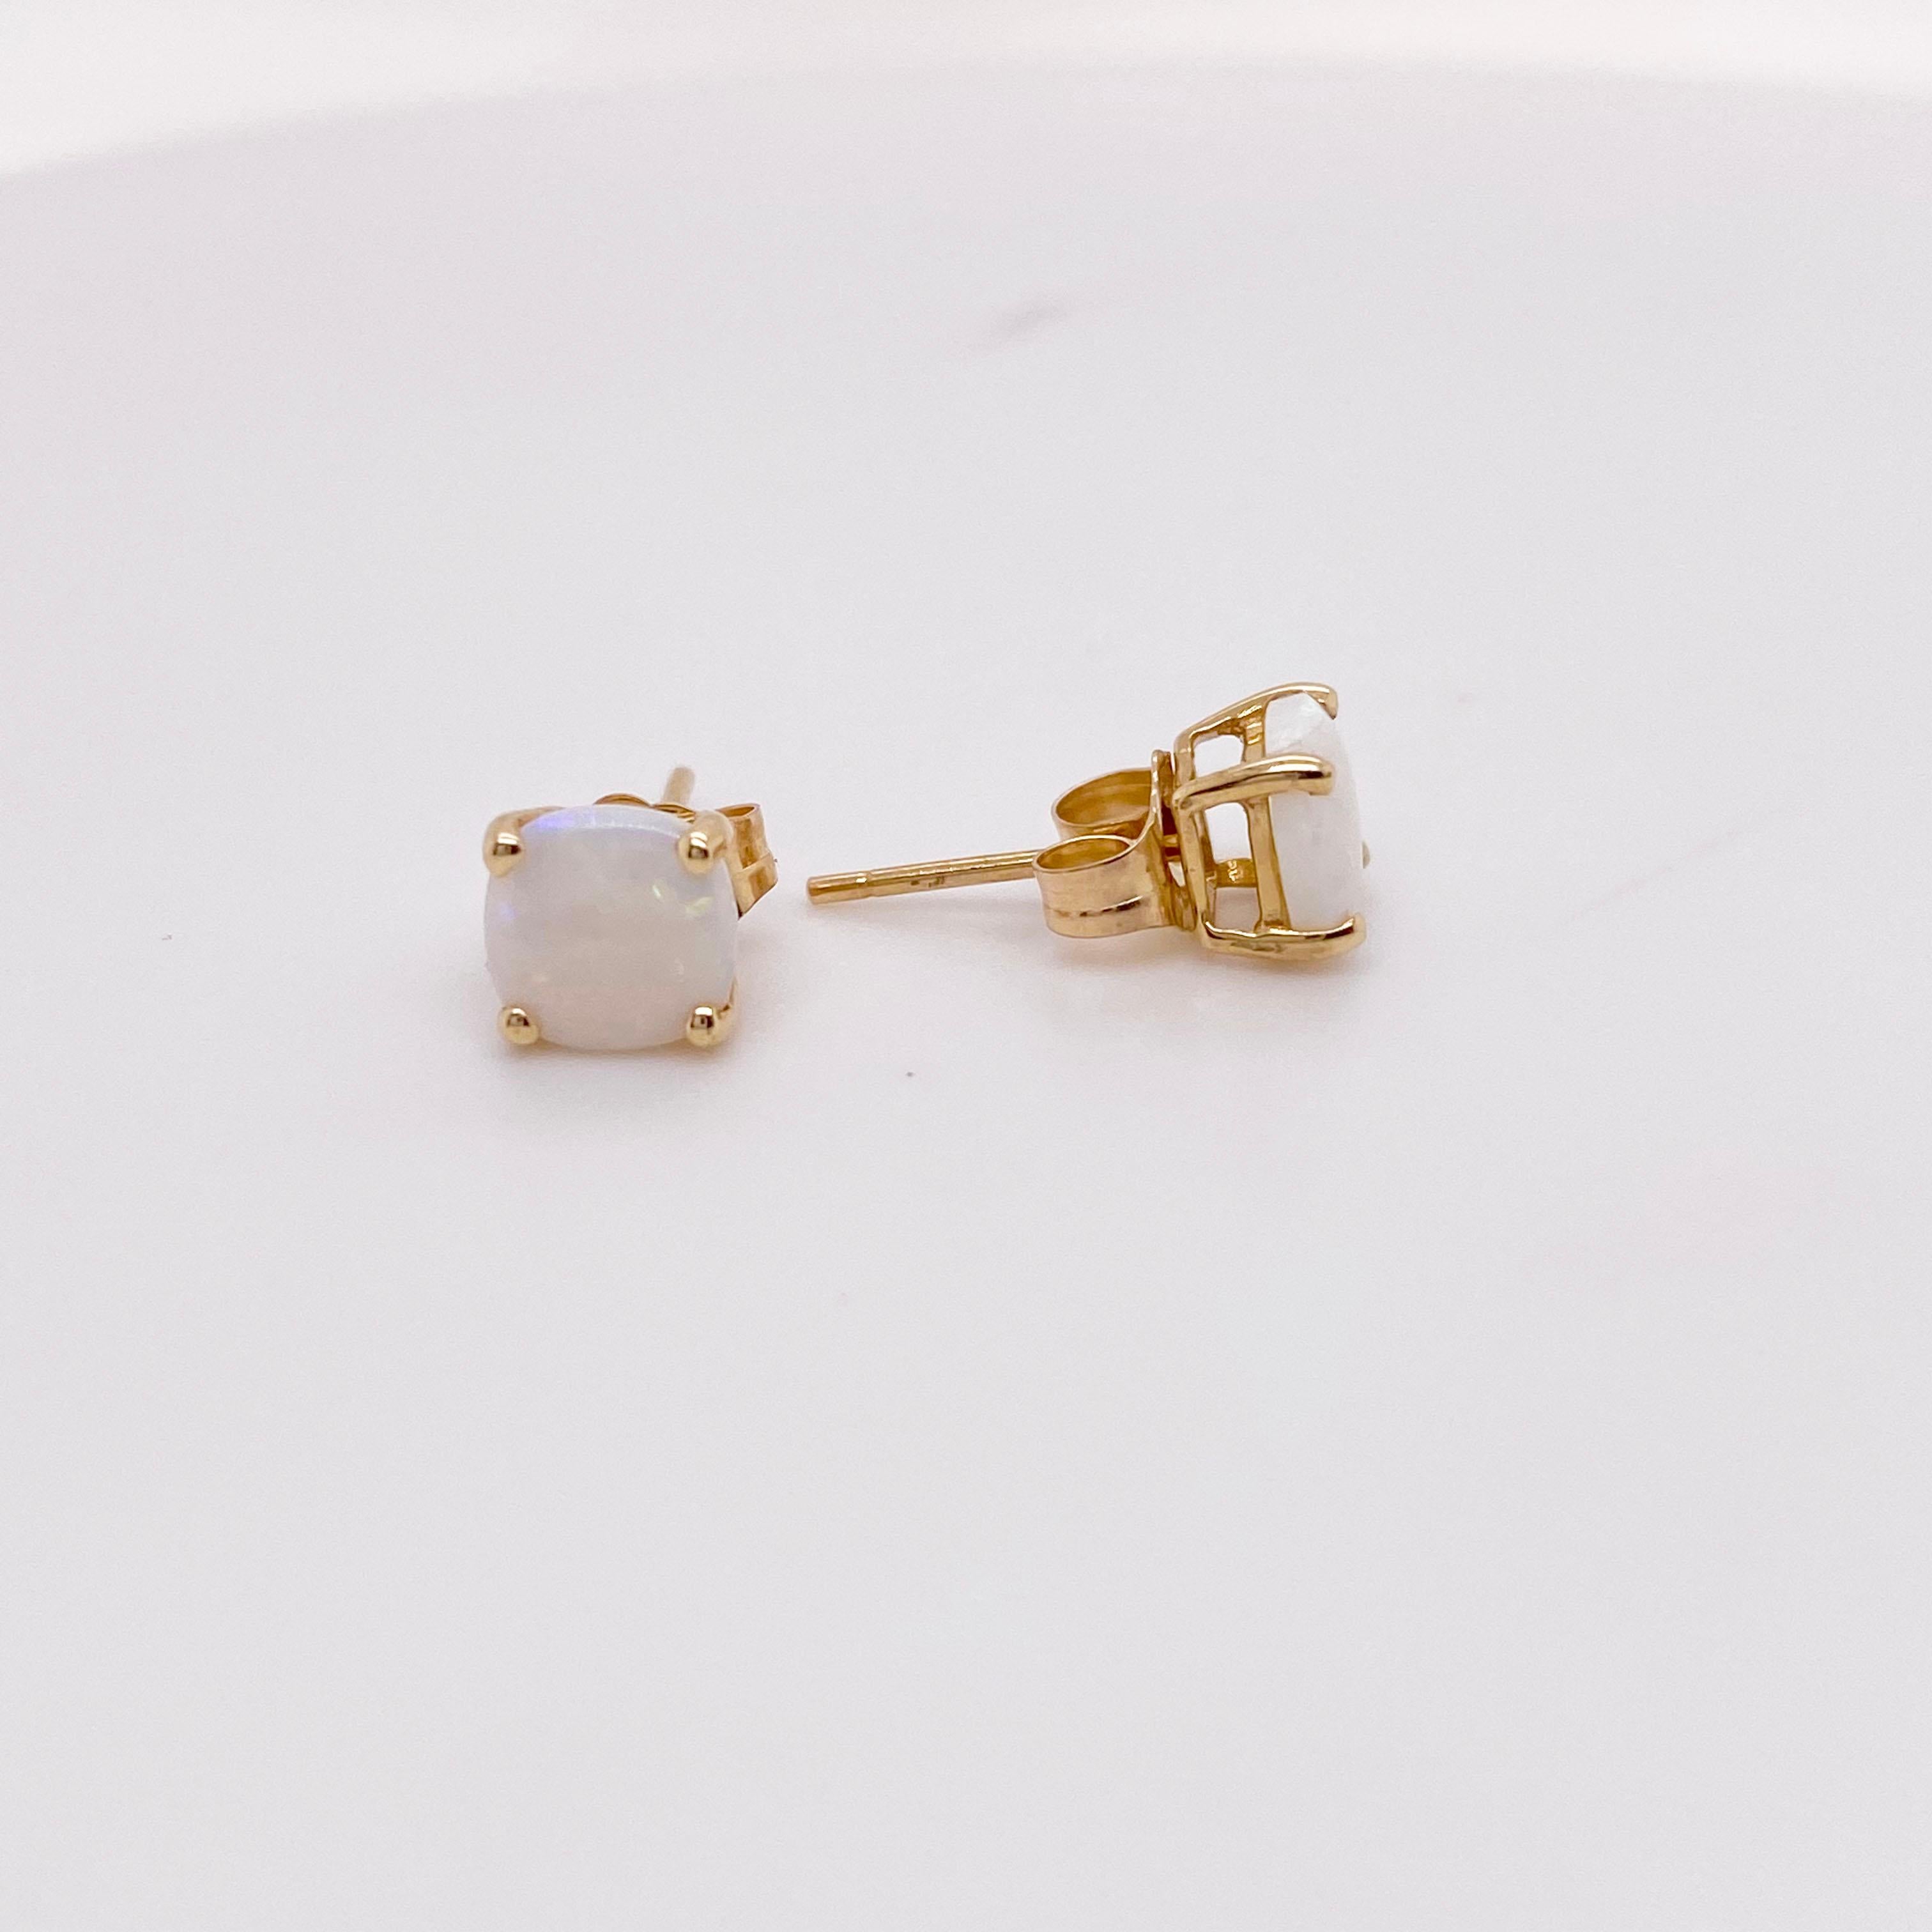 Les détails de ces superbes boucles d'oreilles sont indiqués ci-dessous :
Qualité du métal : Or jaune 14kt 
Type de boucle d'oreille : Stud 
Pierre précieuse : Opale
Poids de la pierre précieuse : 0,57 ct 
Couleur de la pierre précieuse :